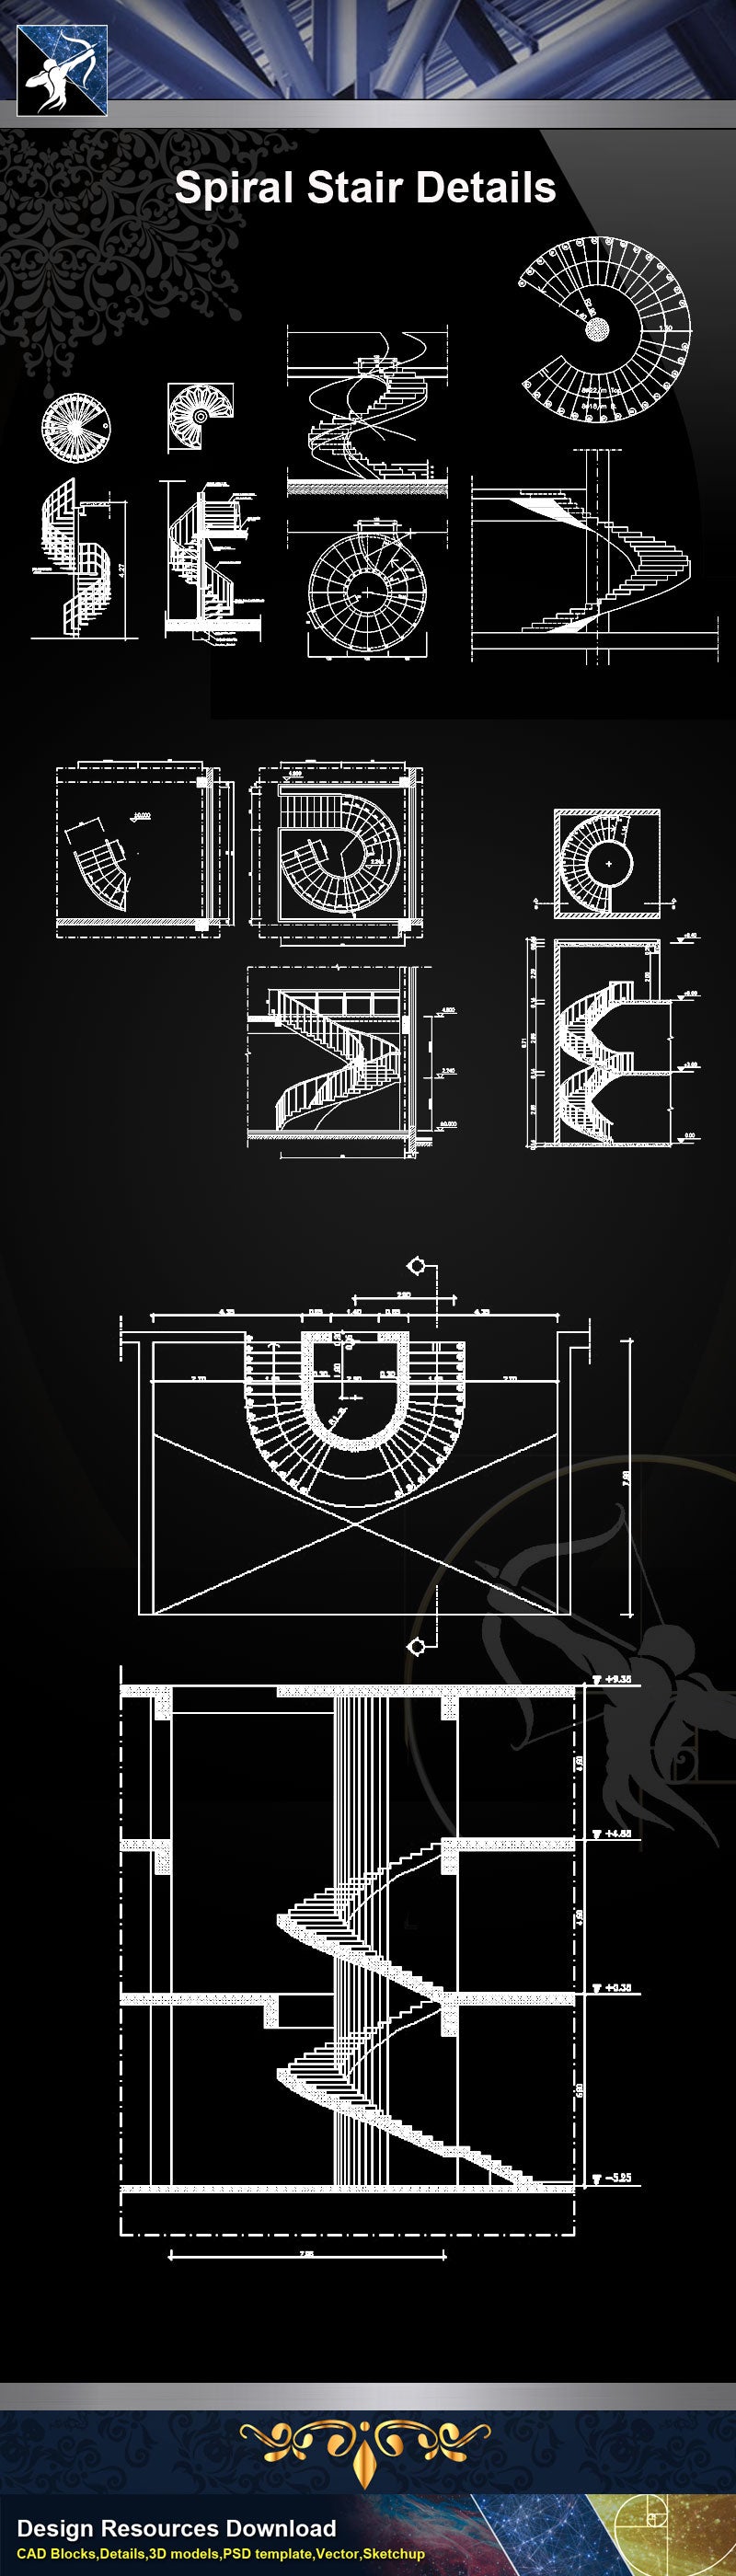 ★【Stair Details】Spiral Stair Details